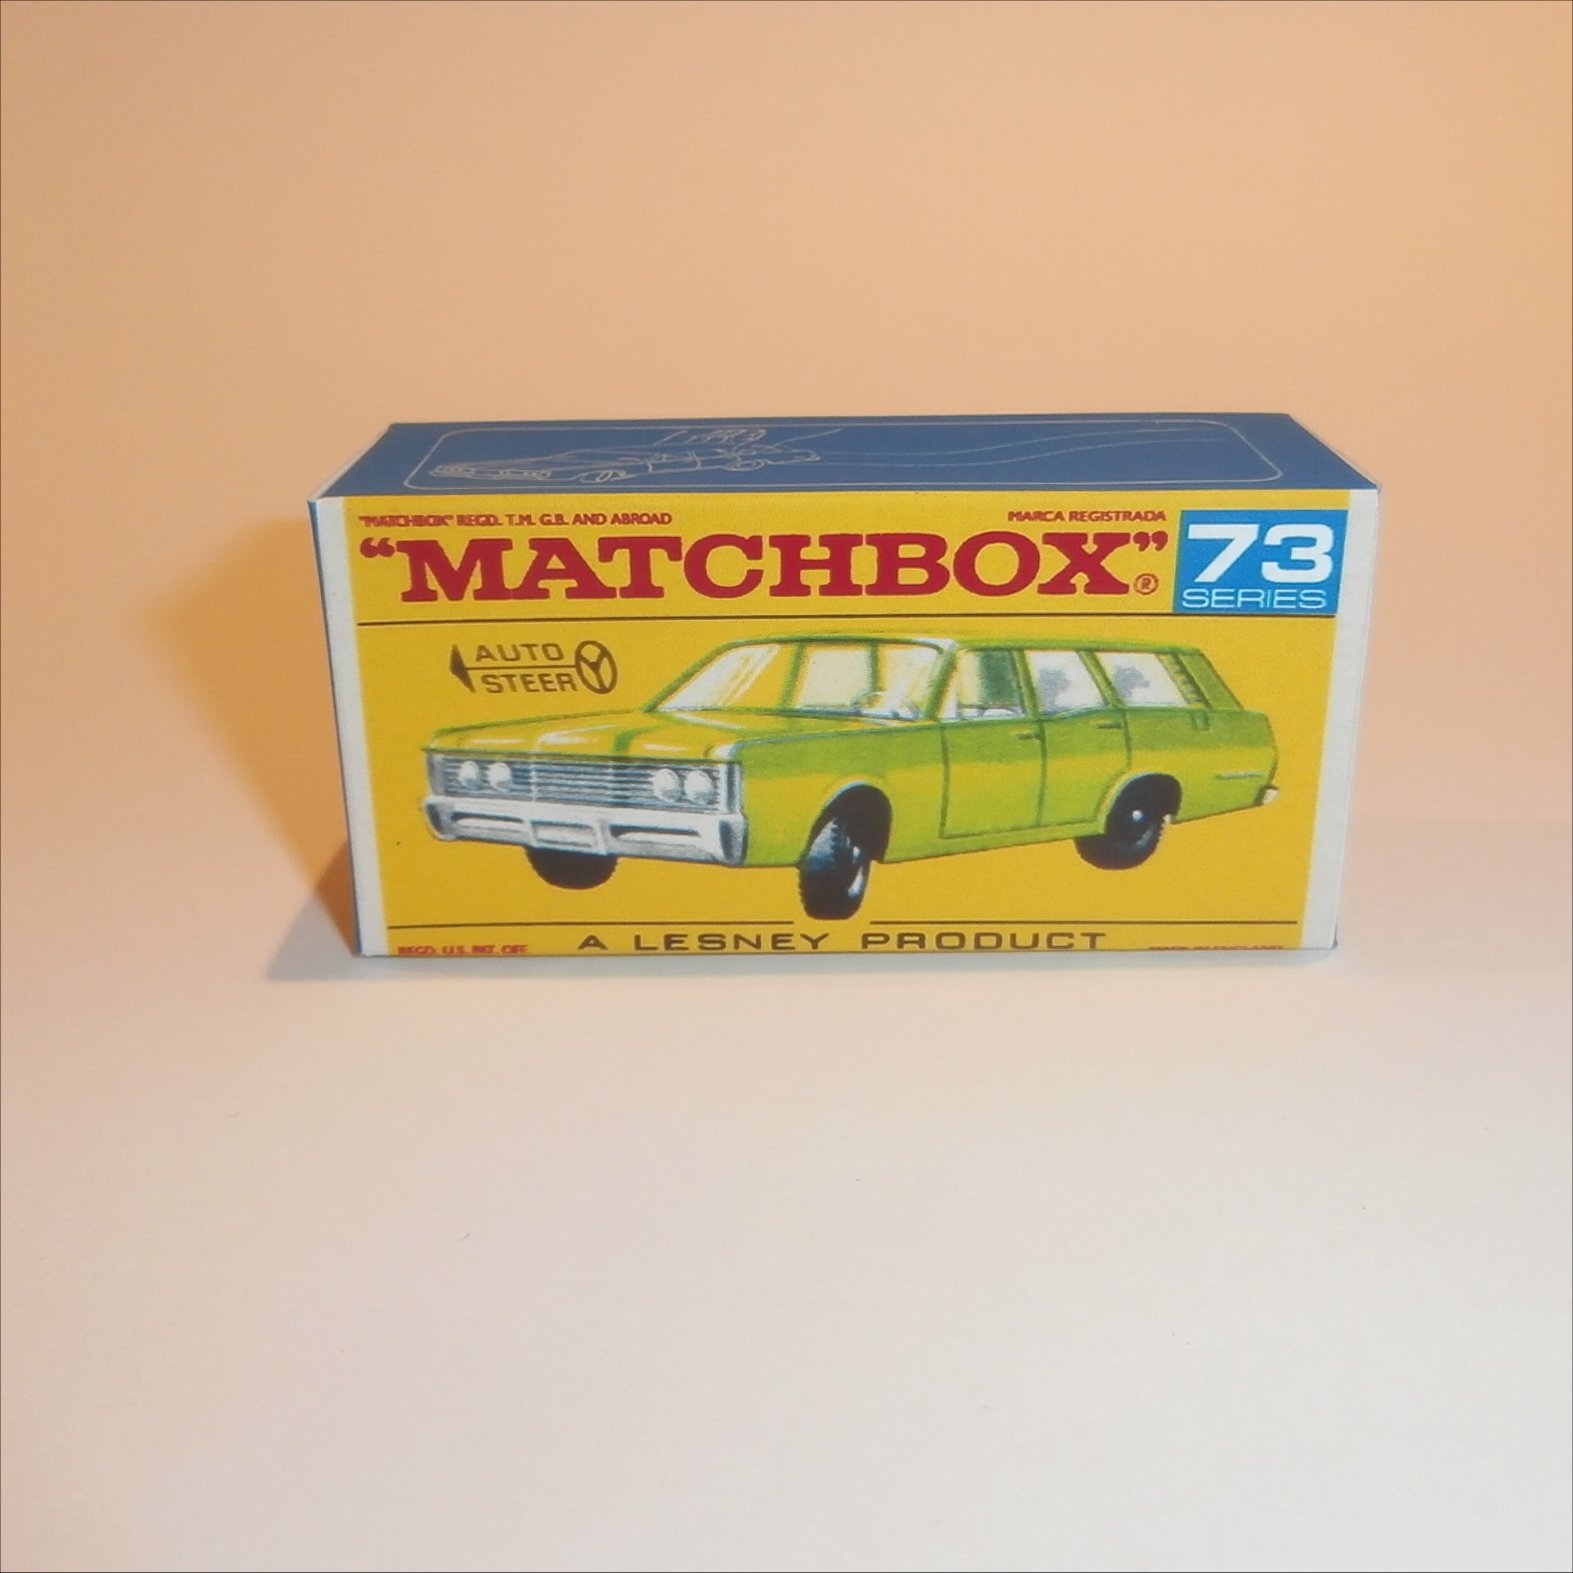 reproduction matchbox car boxes